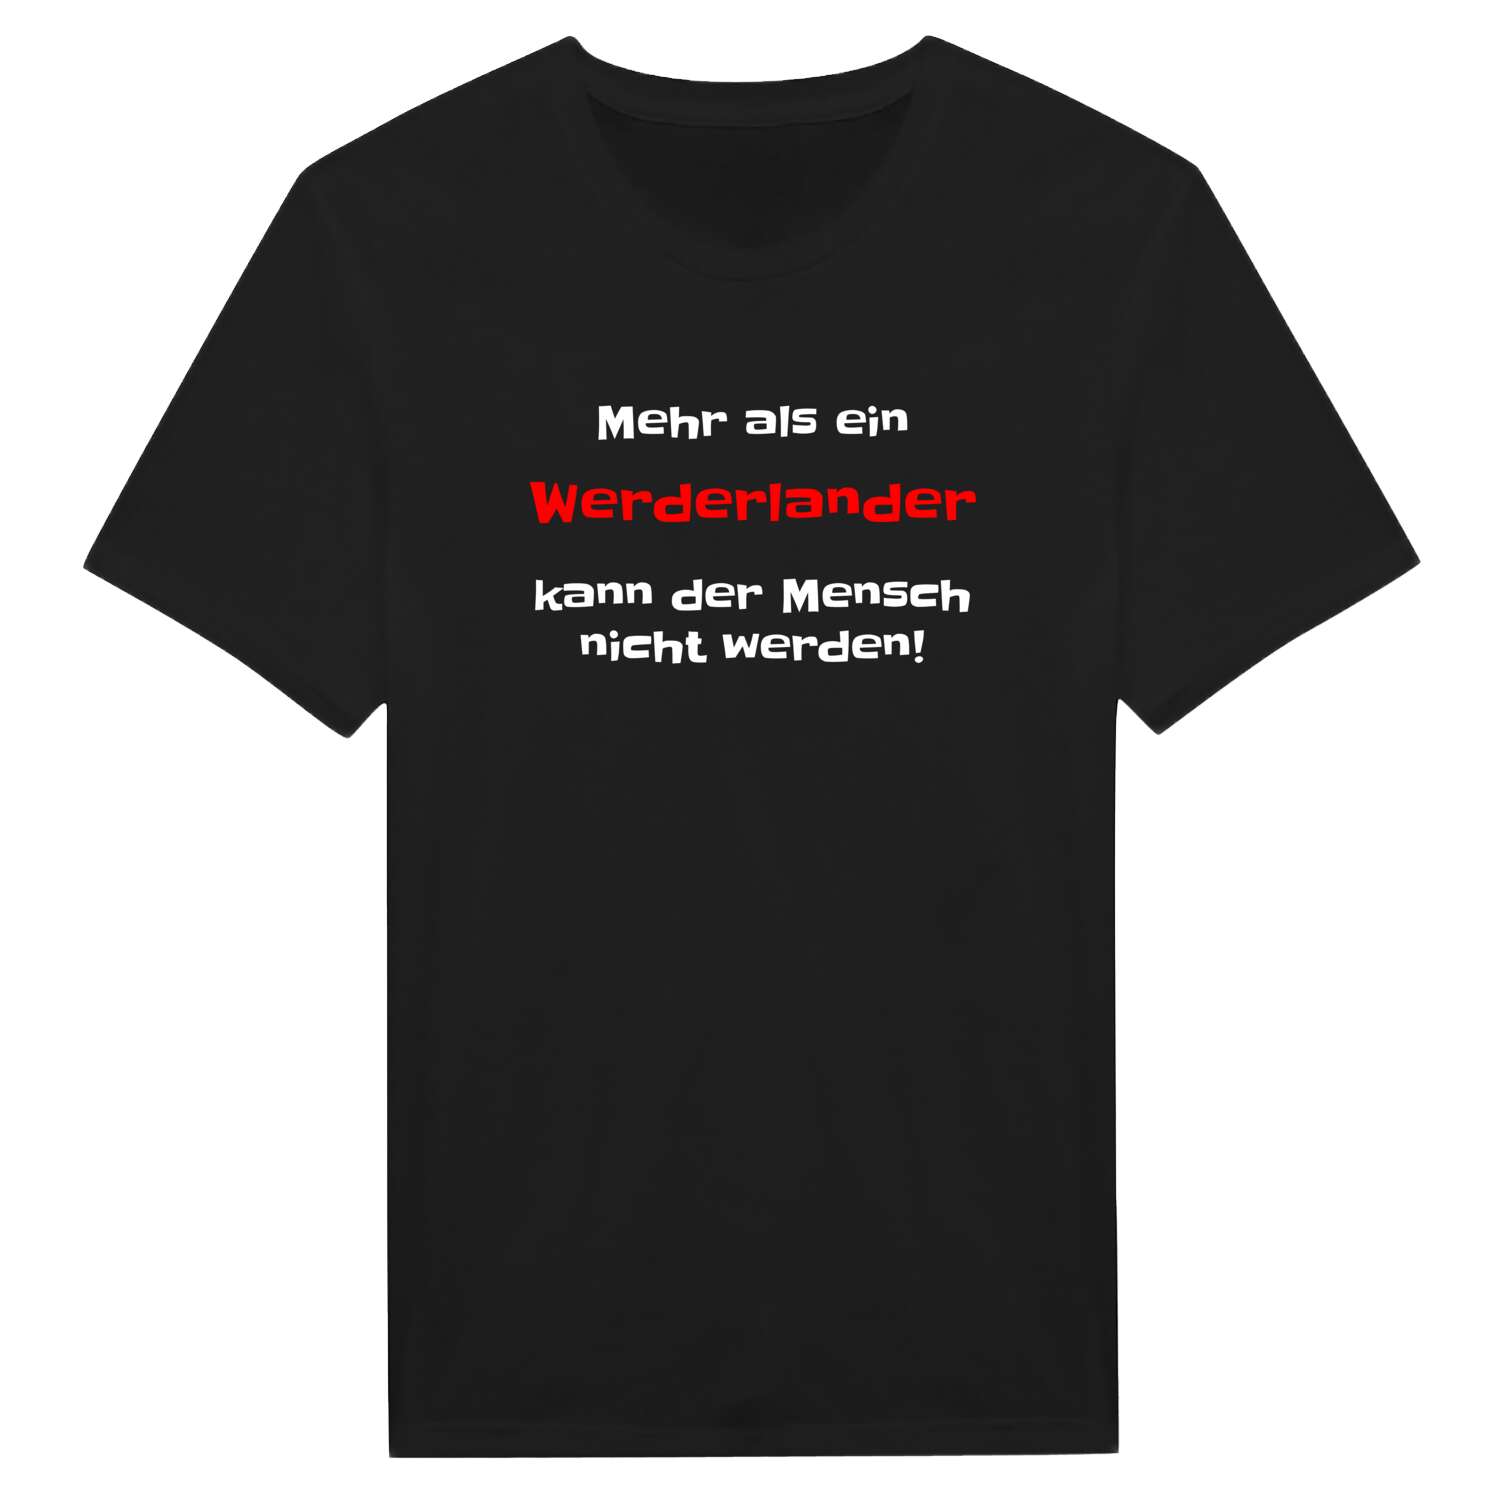 Werderland T-Shirt »Mehr als ein«